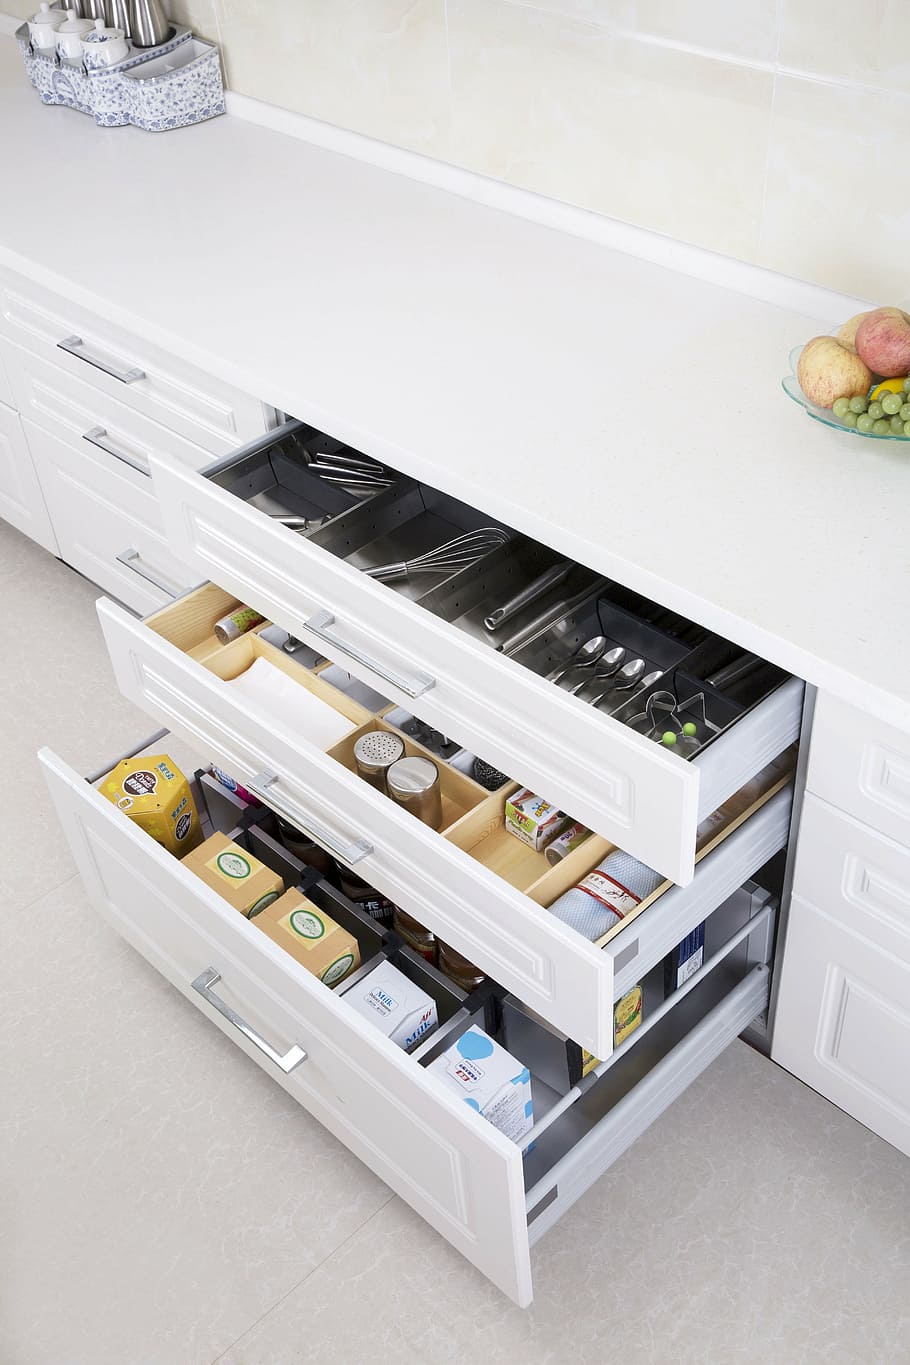 HD wallpaper: kitchen drawers, kitchen storage expert, too cool, kitchen  supplies | Wallpaper Flare